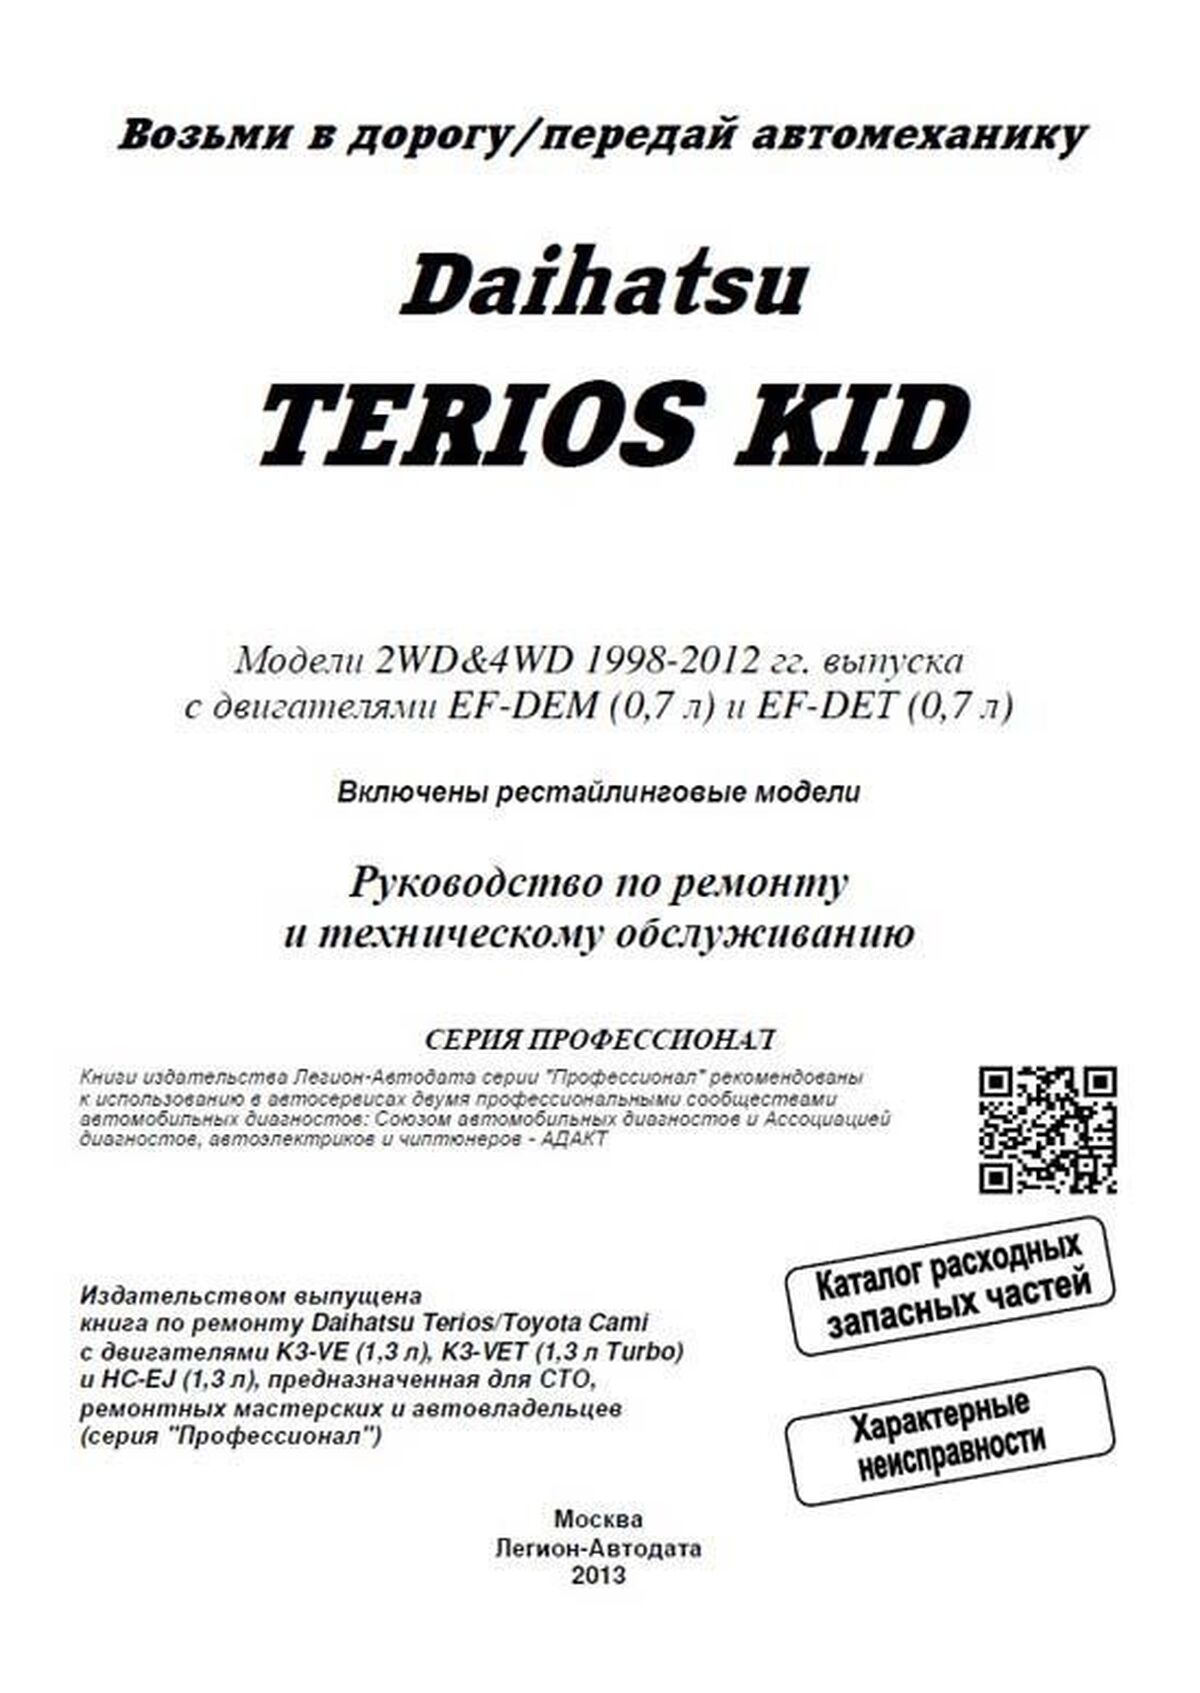 Книга: DAIHATSU TERIOS KID (б) 1998-2012 г.в. рем., экспл., то, сер.ПРОФ. | Легион-Aвтодата